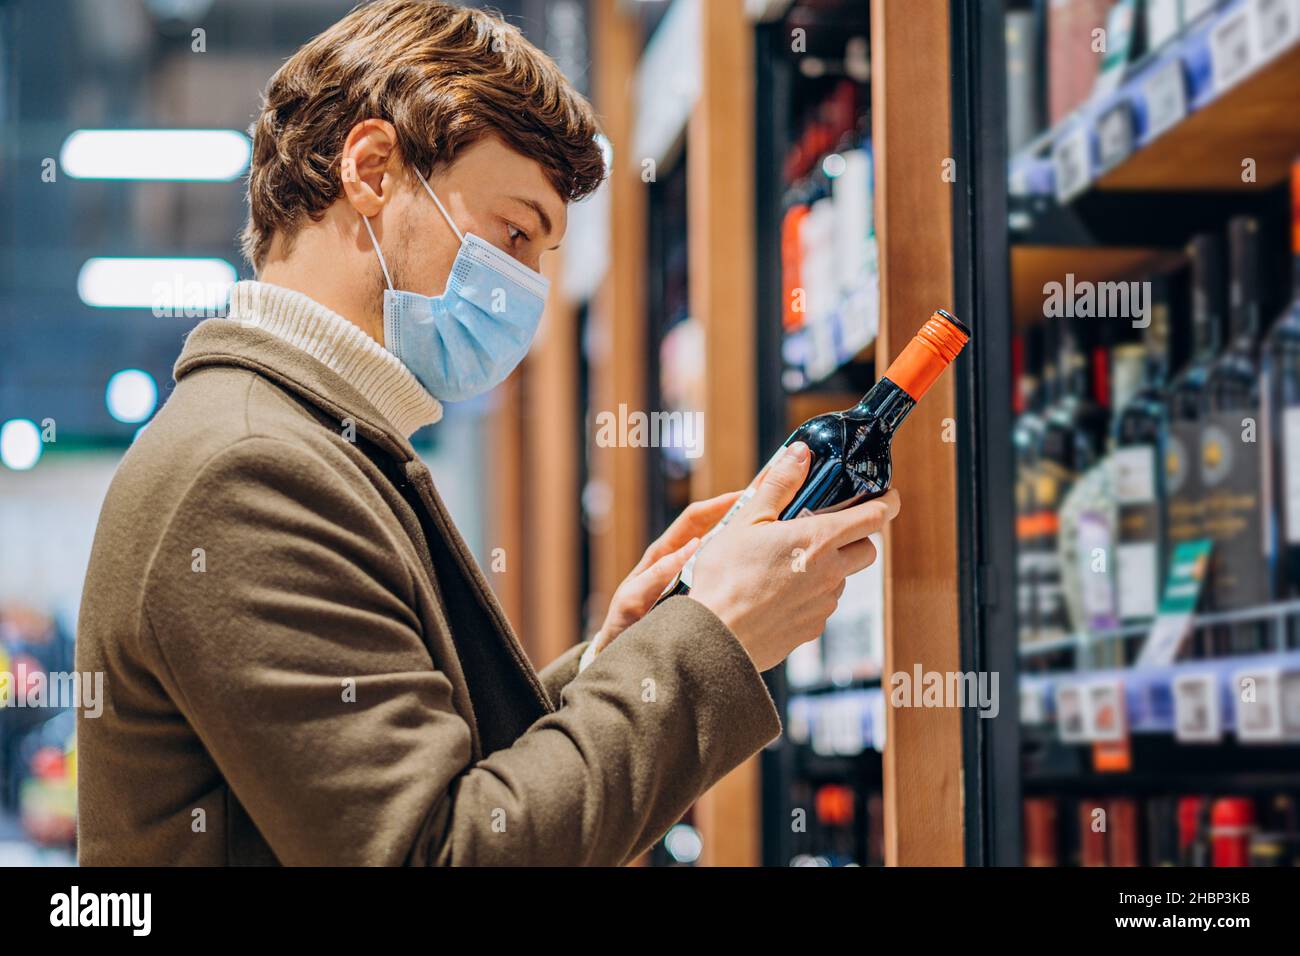 l'uomo di successo in un cappotto con maschera legge l'etichetta su una bottiglia di vino in un moderno supermercato, sceglie una bevanda alcolica, studia la composizione Foto Stock